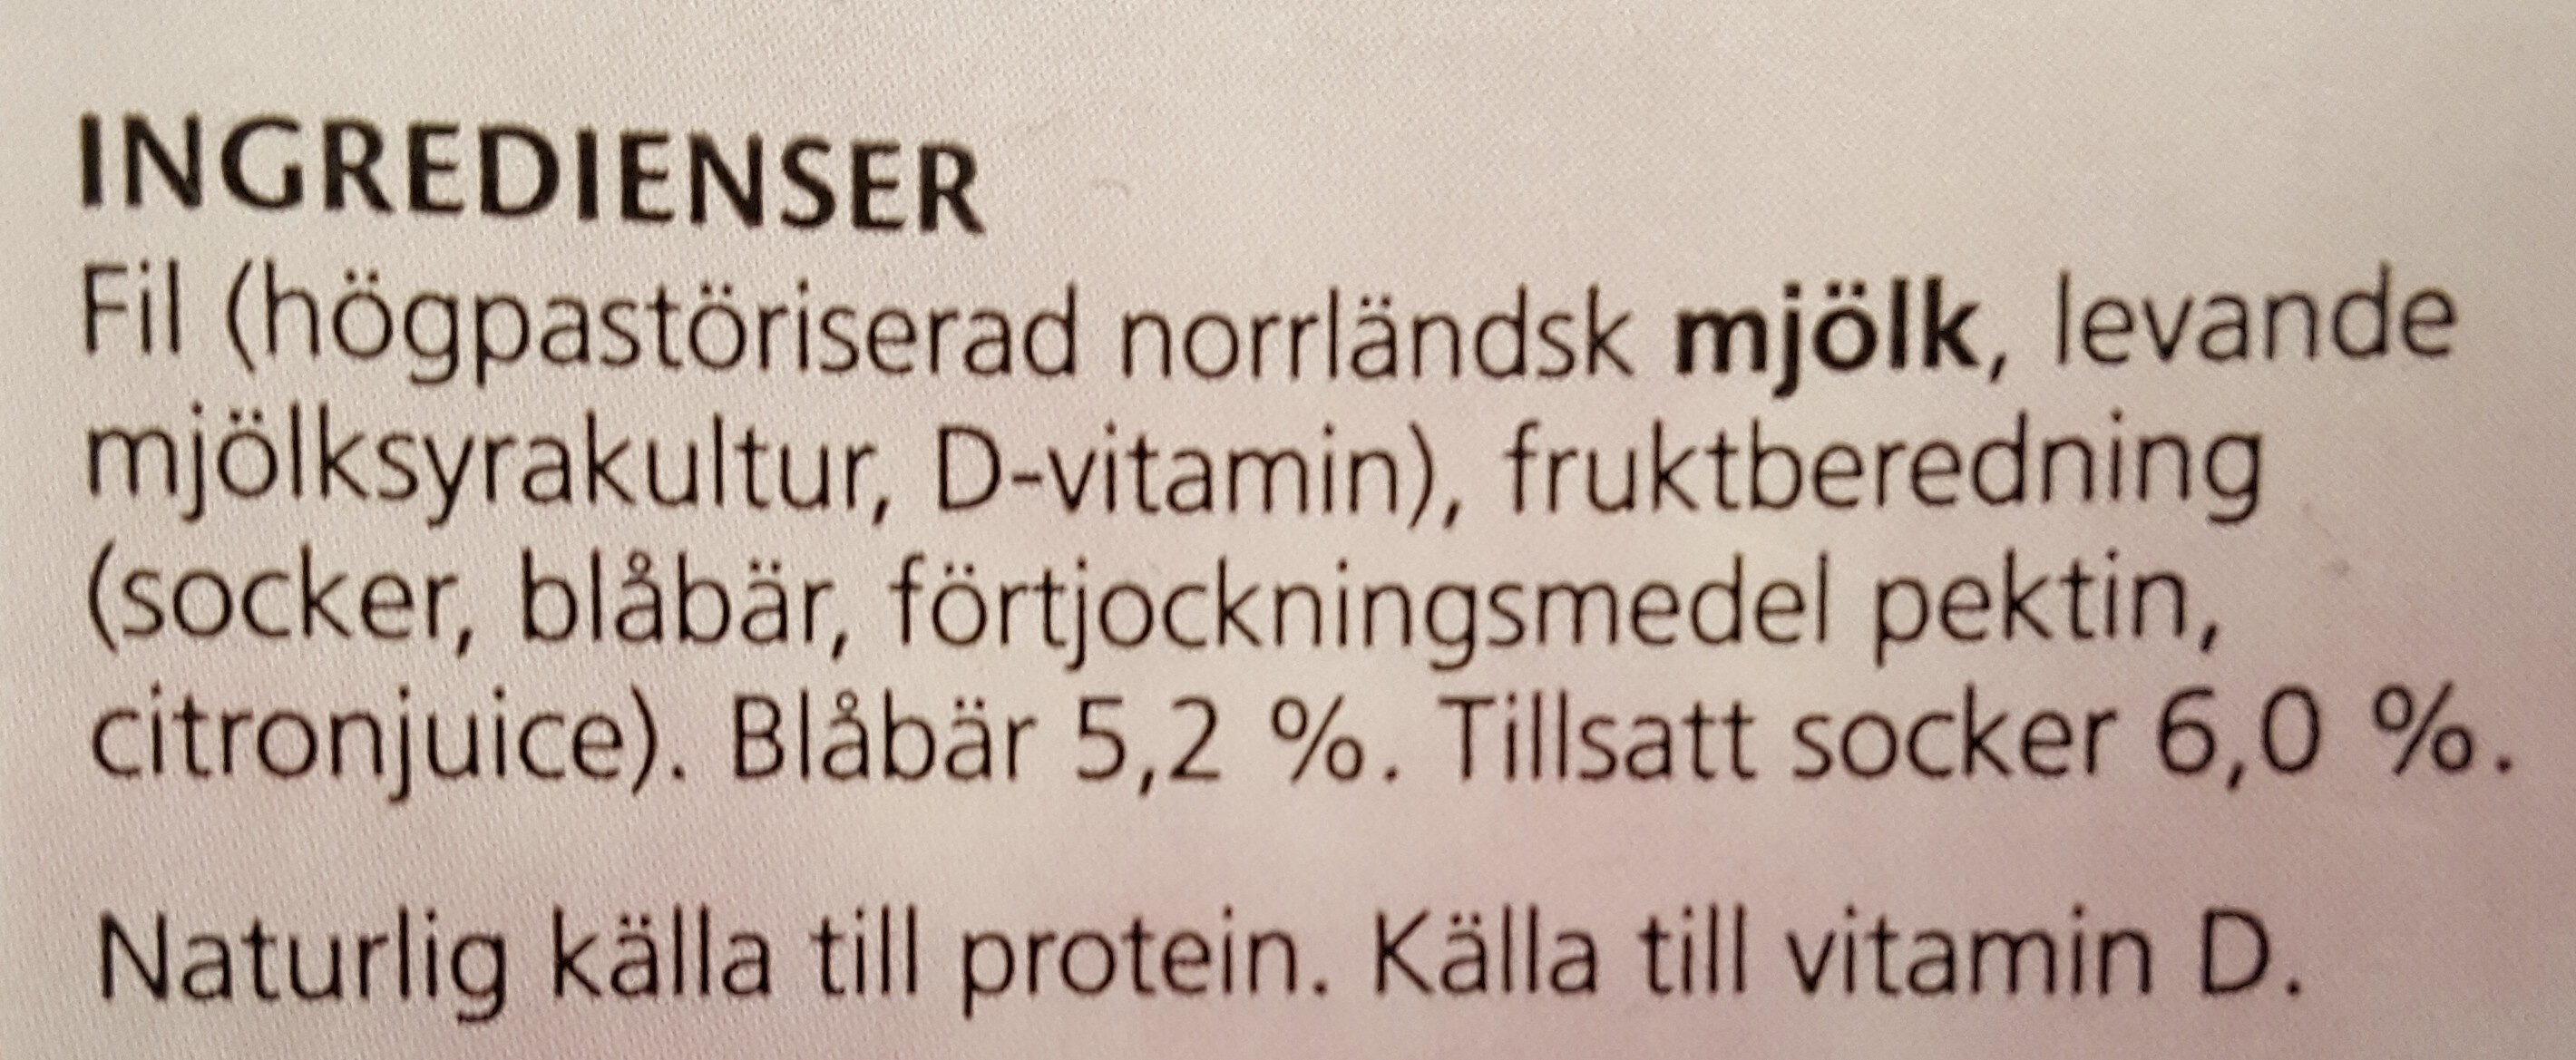 Fjällfil Blåbär - Ingredienser